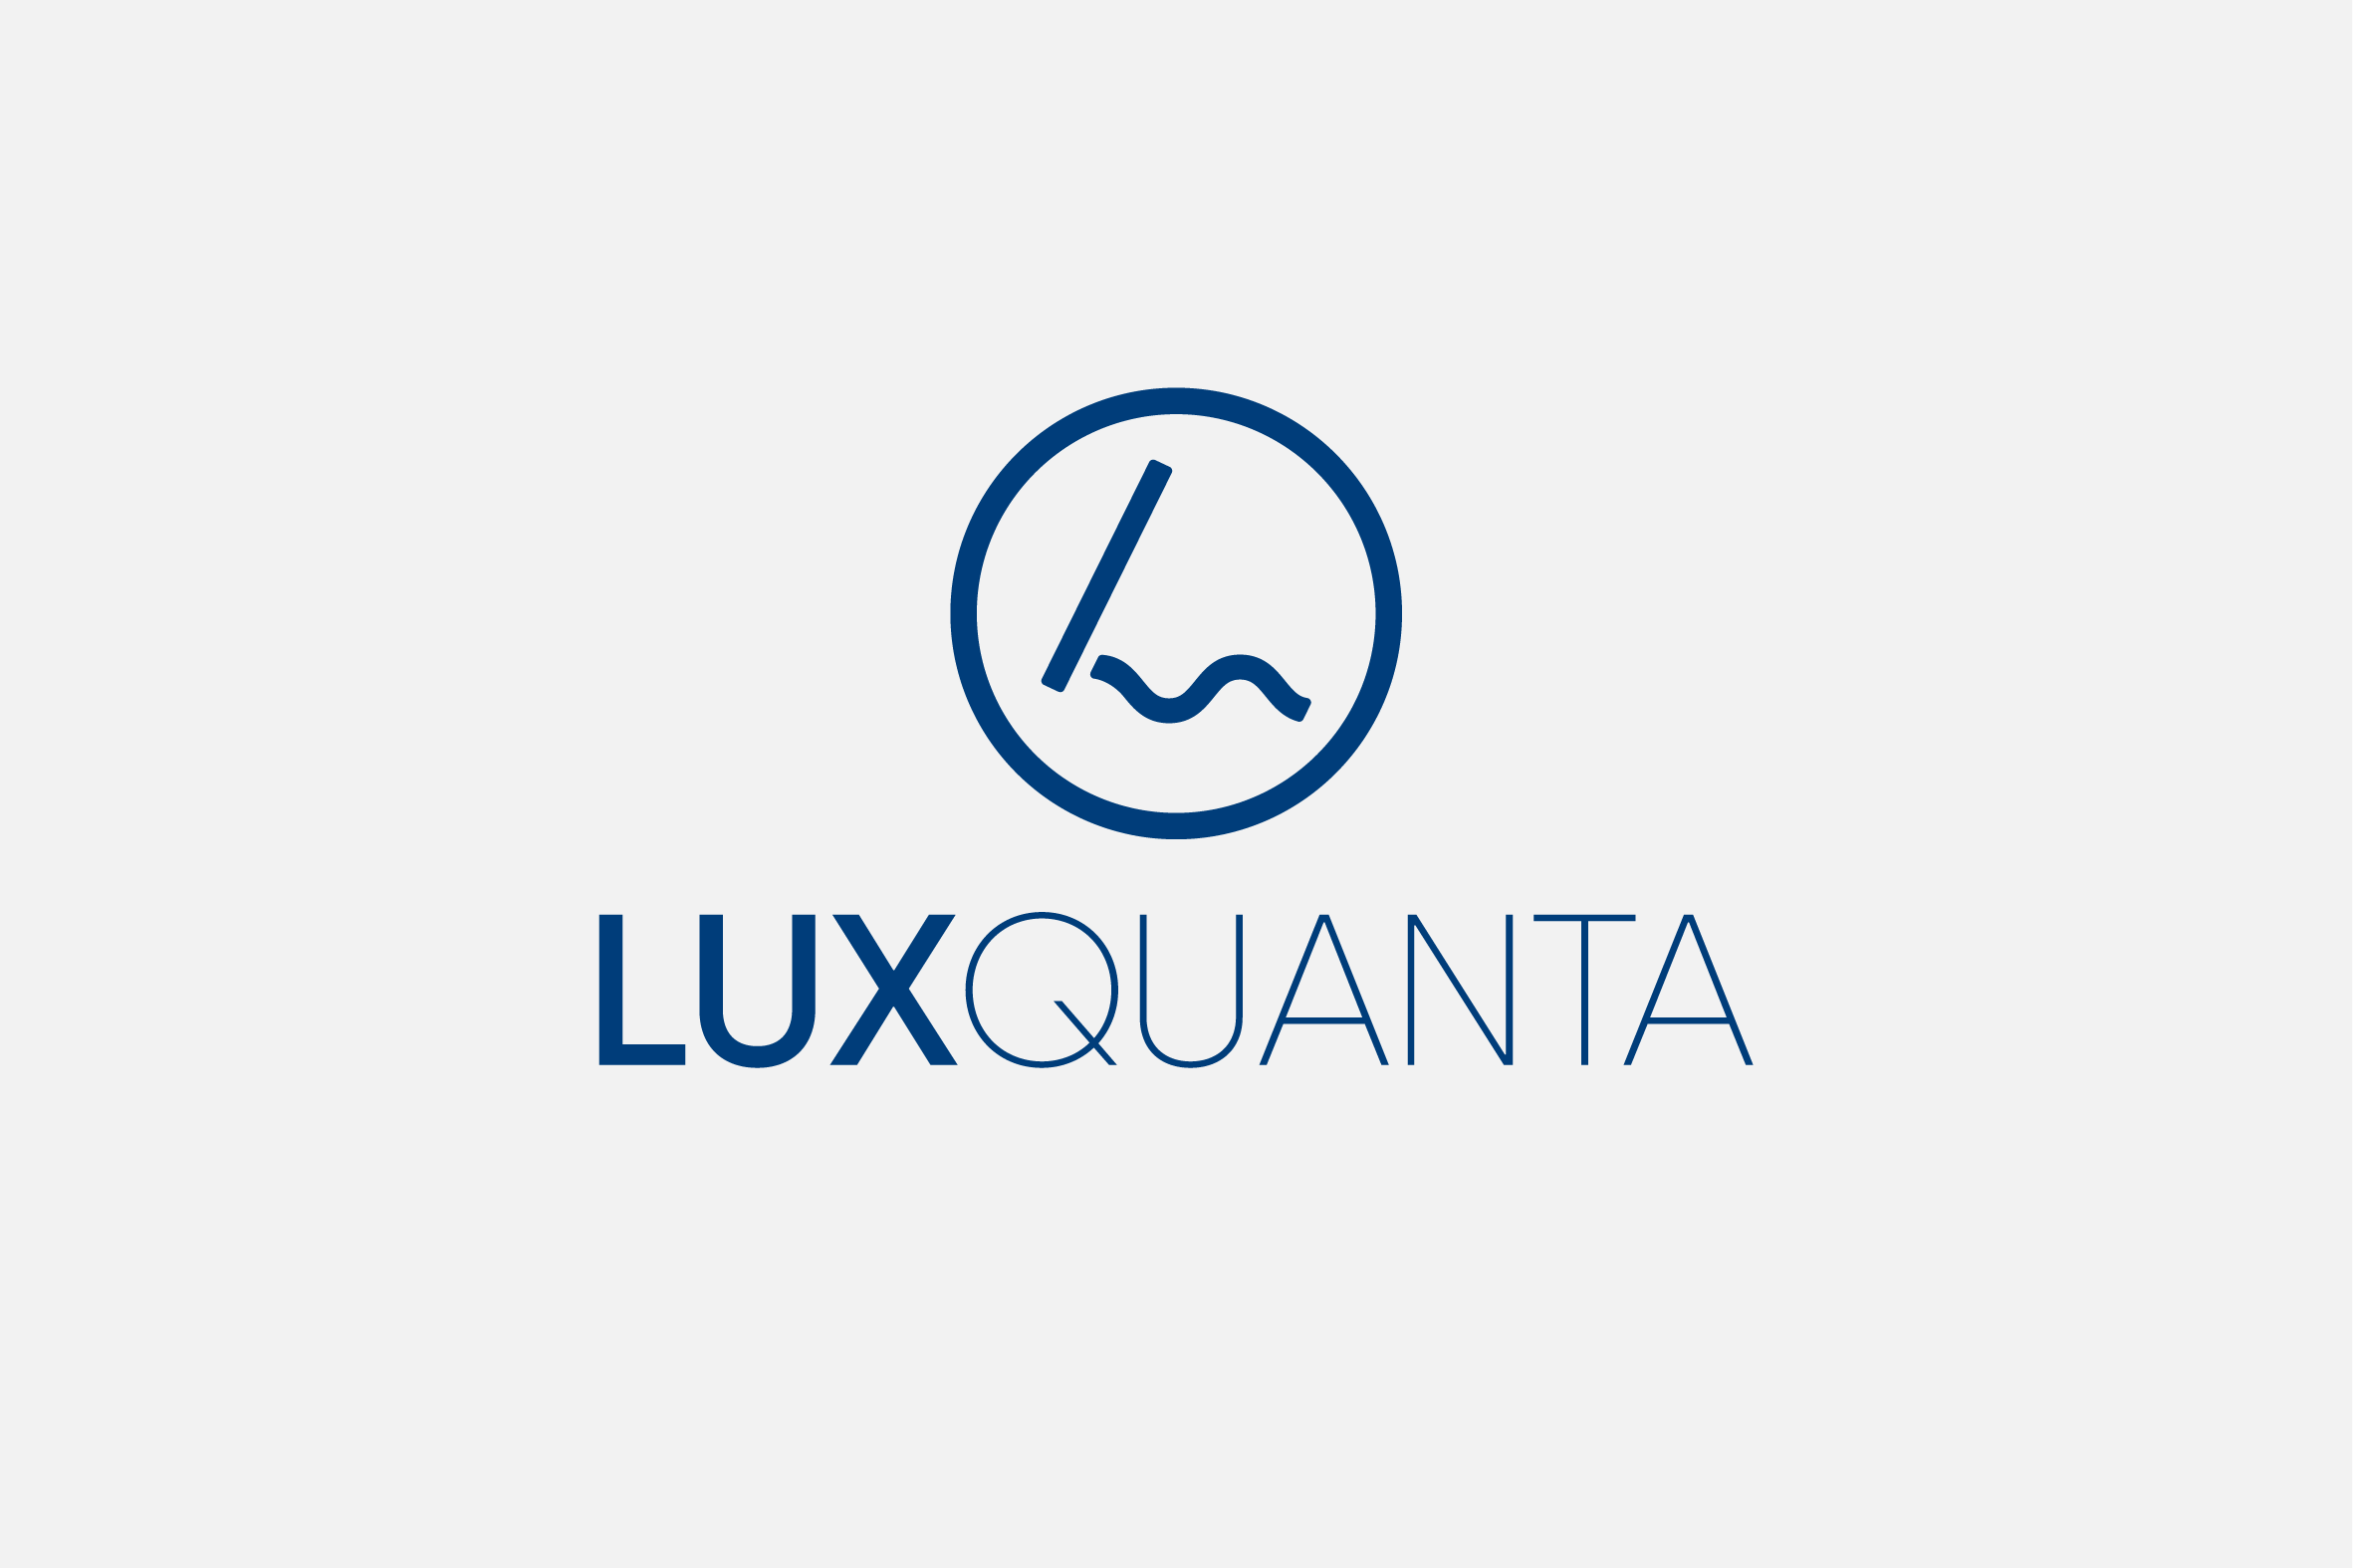 Luxquanta - Grafisch ontwerp voor wetenschap en technologie